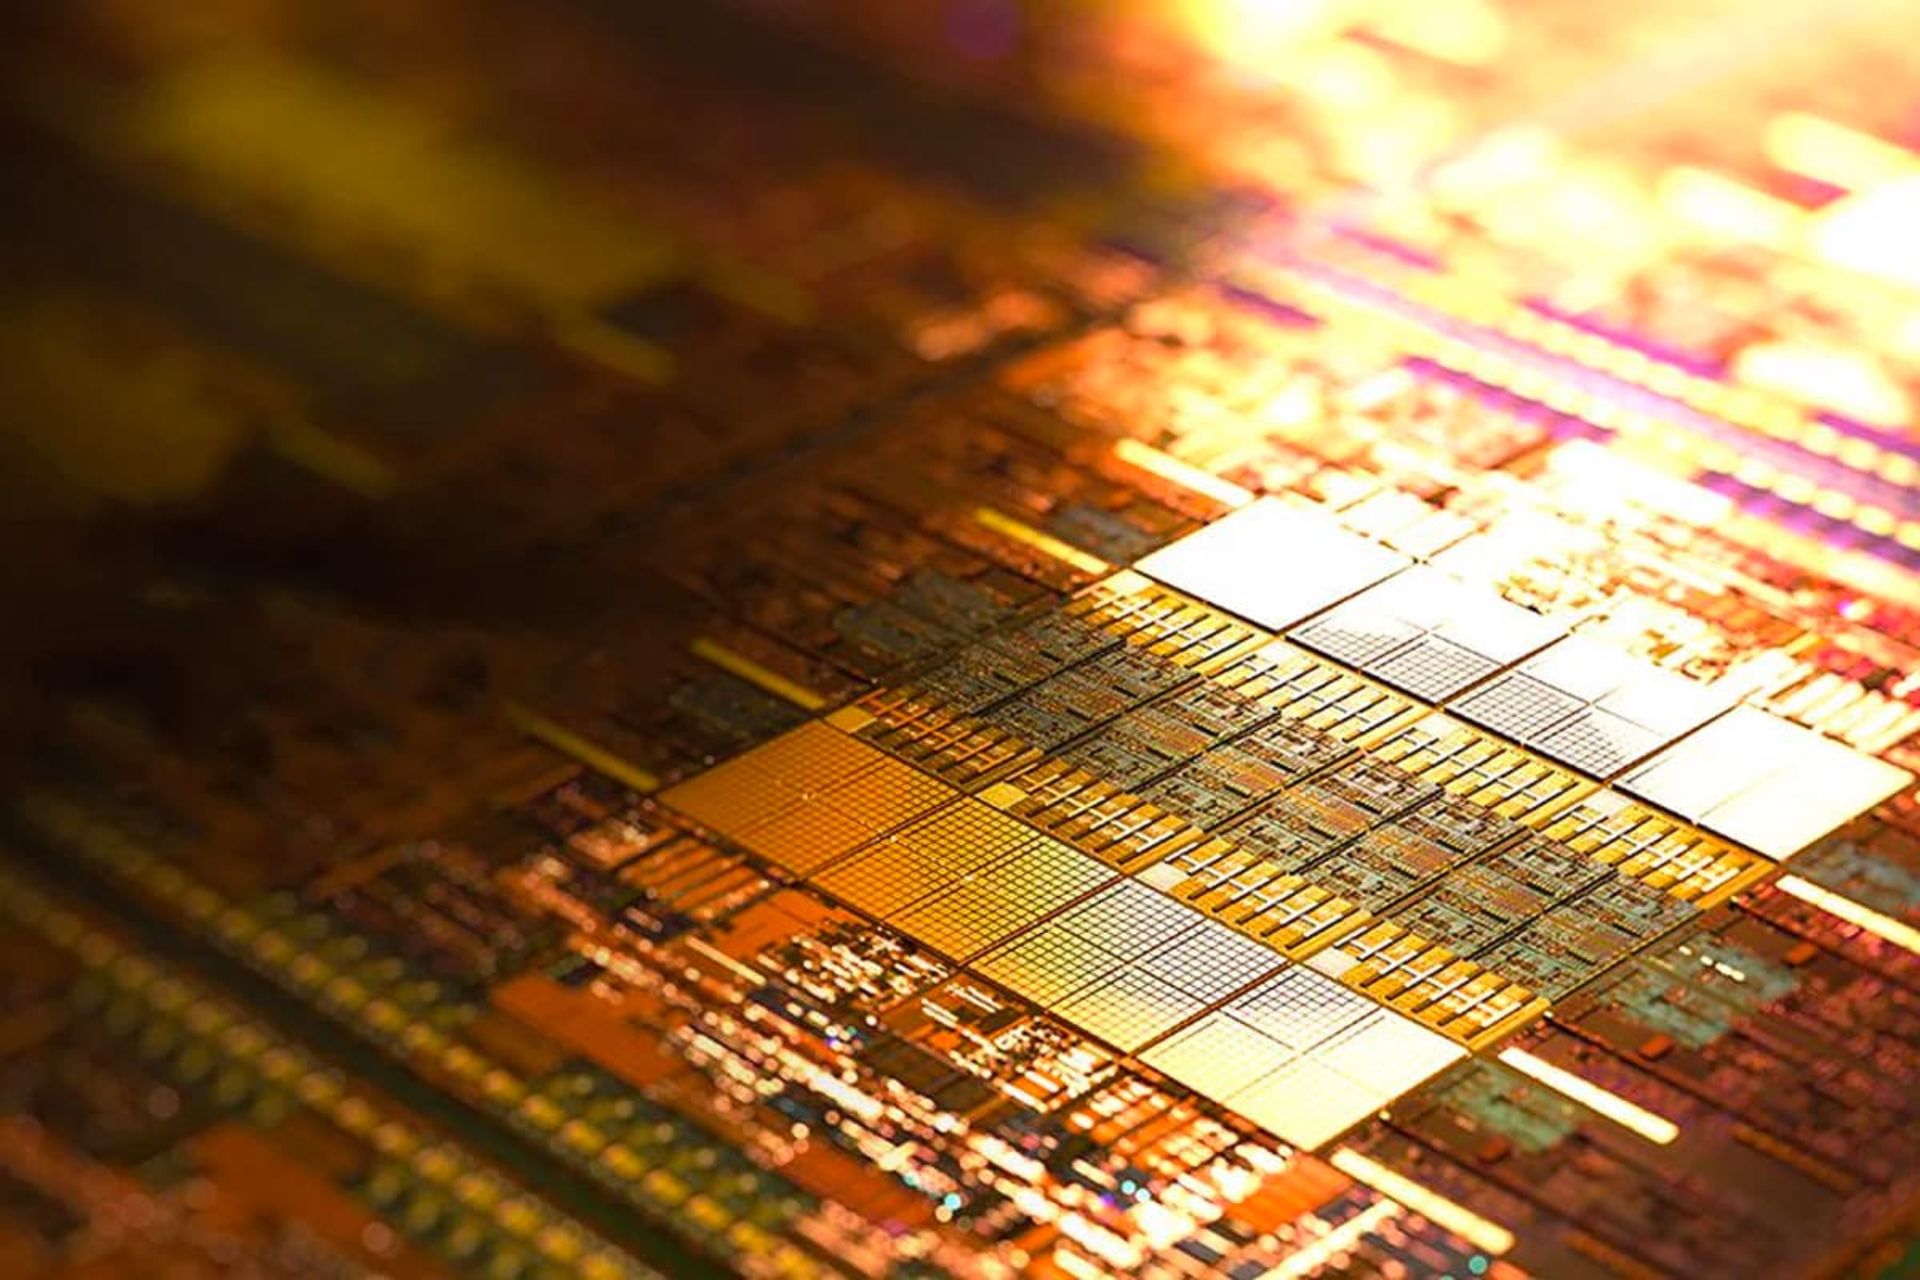 پردازنده مدیاتک / MediaTek به رنگ طلایی